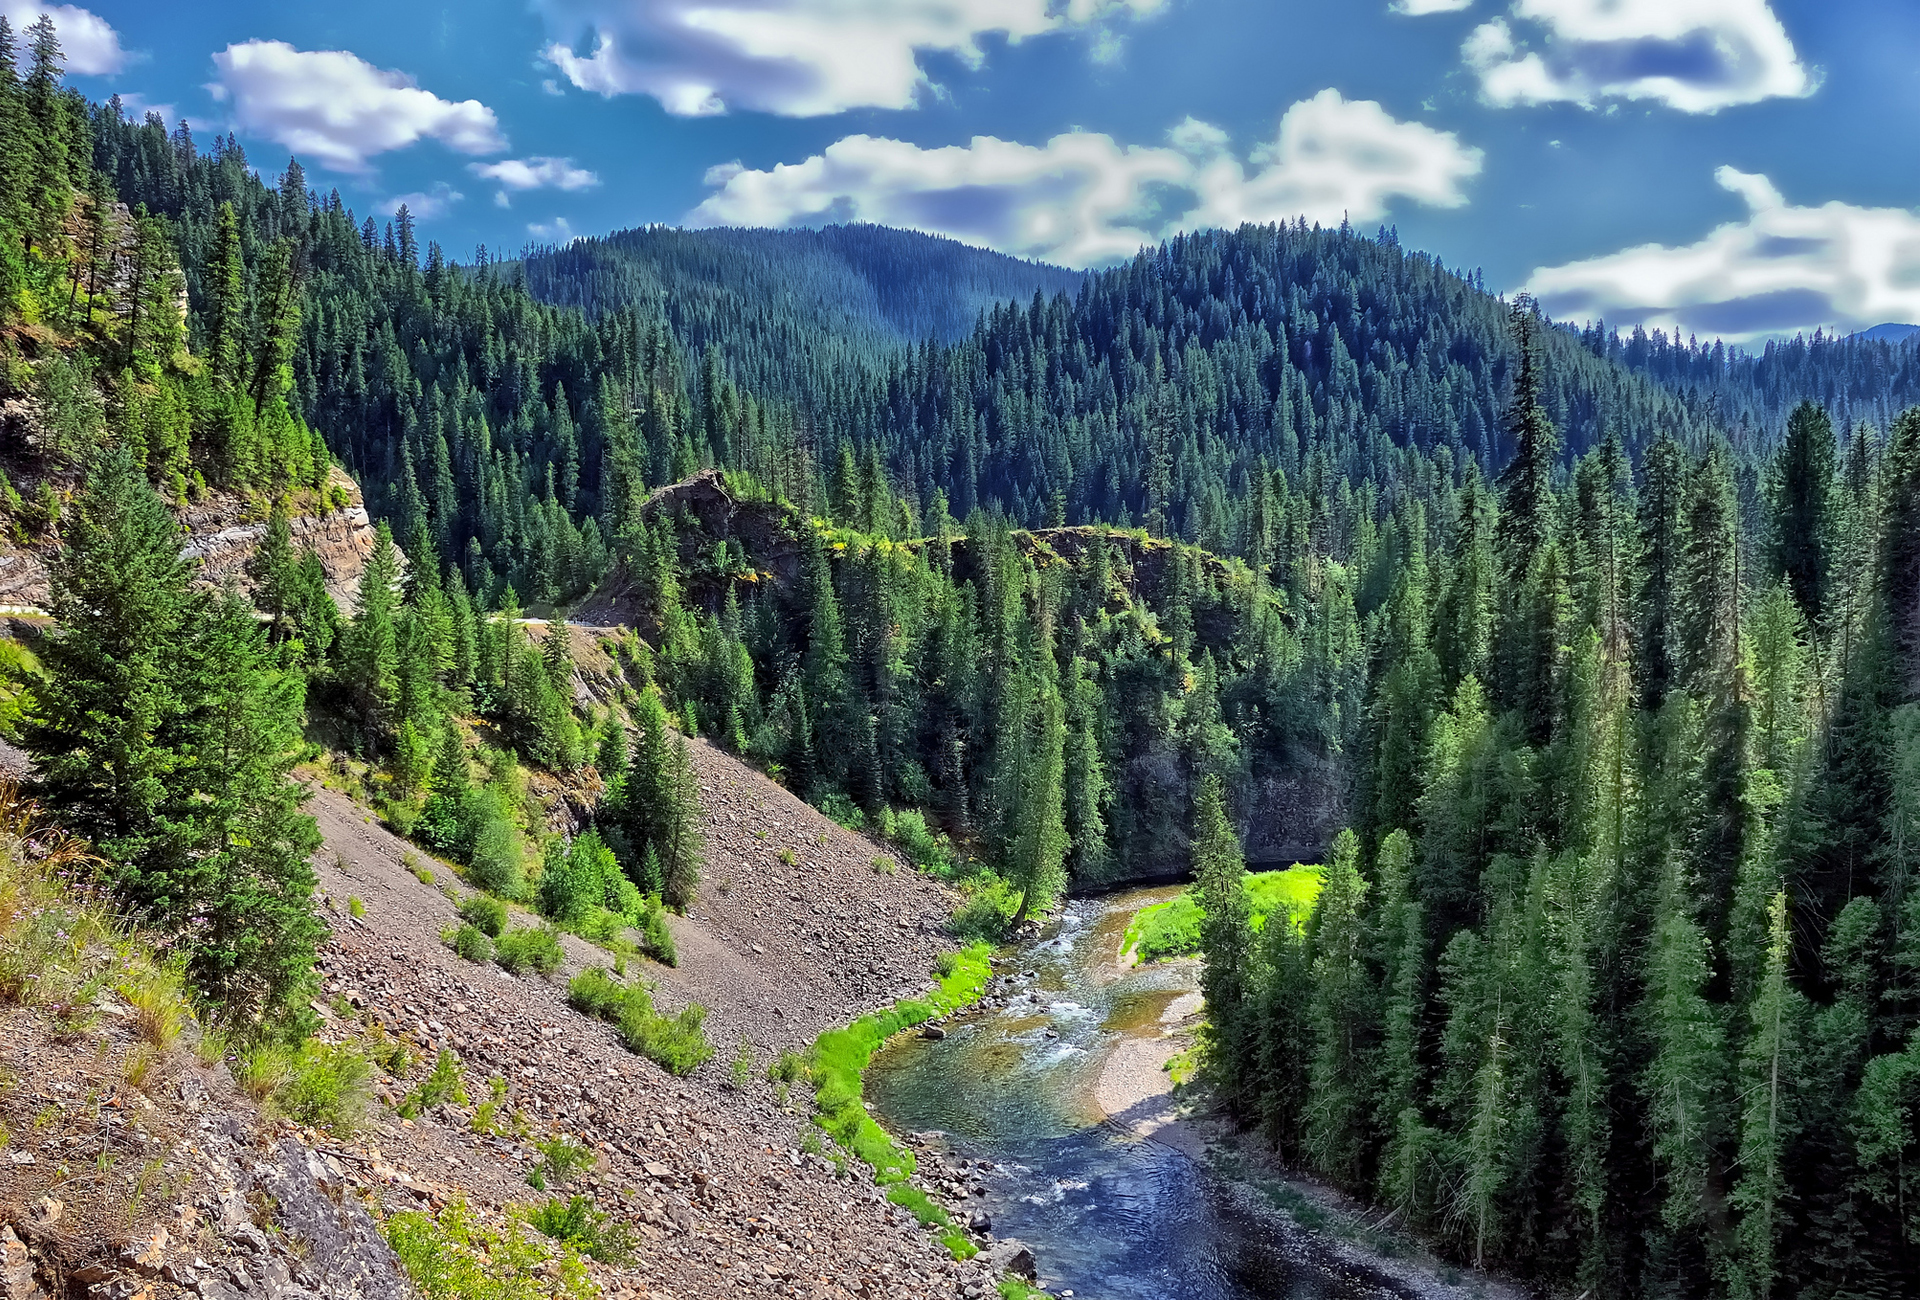 Хвойная долина. Тайга (хвойные леса) реки Сыктывкар. Горный хвойный лес в Киргизии. Лесистые горы Казахстана. Долина реки Айдахо.